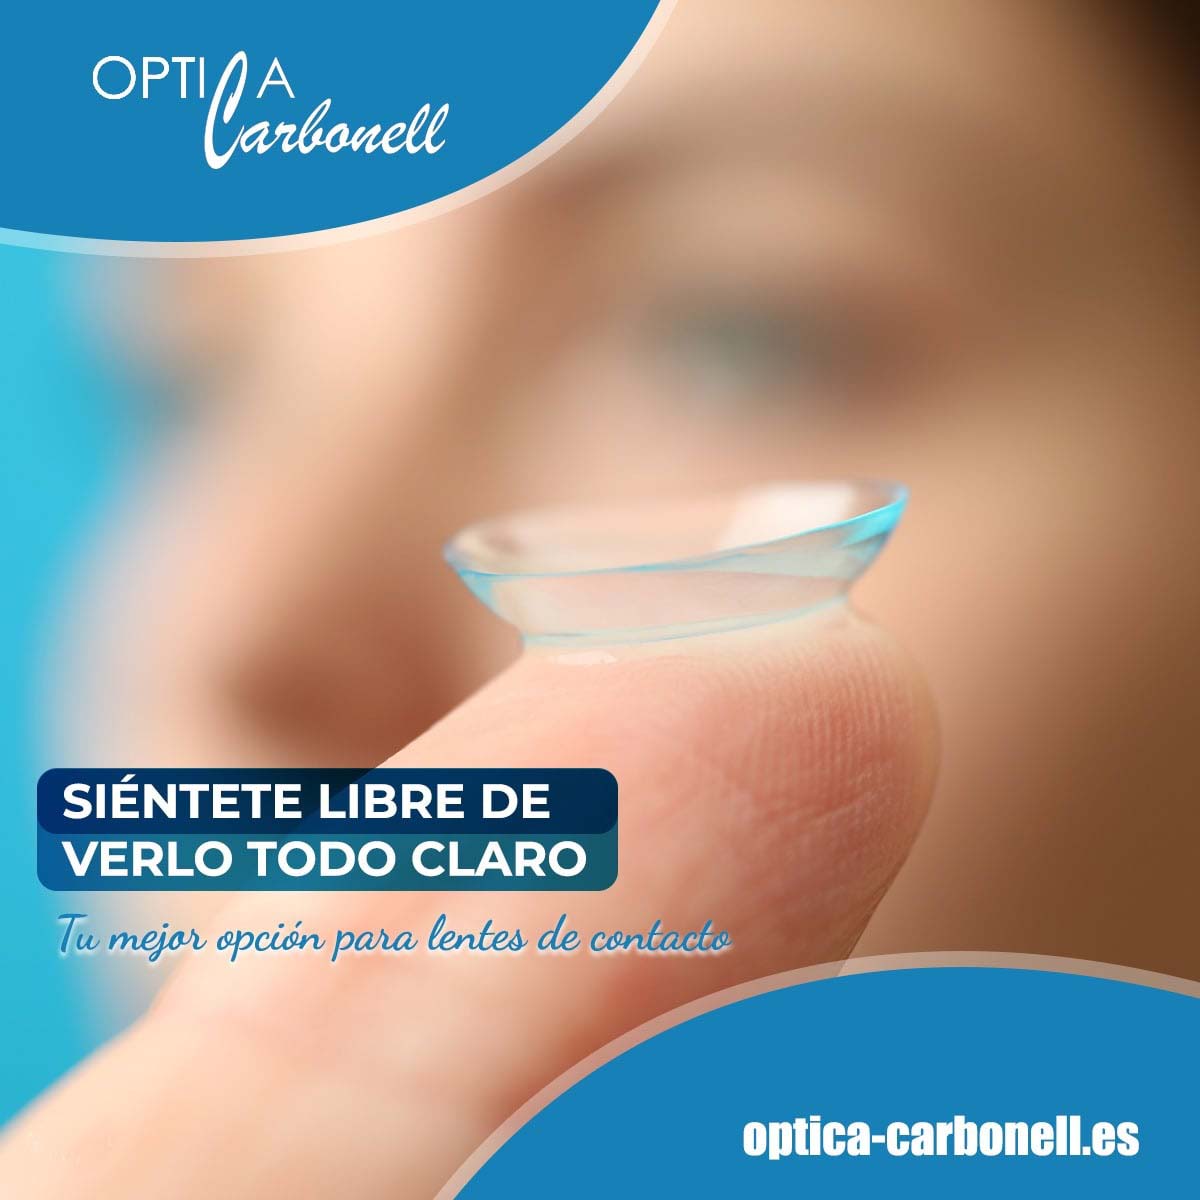 ¡Siéntete libre de verlo todo claro!
⚪👀⚪ 

#LentesDeContacto

Ó𝙥𝙩𝙞𝙘𝙖 𝘾𝙖𝙧𝙗𝙤𝙣𝙚𝙡𝙡
🏠 Hermano Palomo, 6 #Huelva
☎ 959 23 27 28
💻 optica-carbonell.es
#optica #salud #vista #optometrista